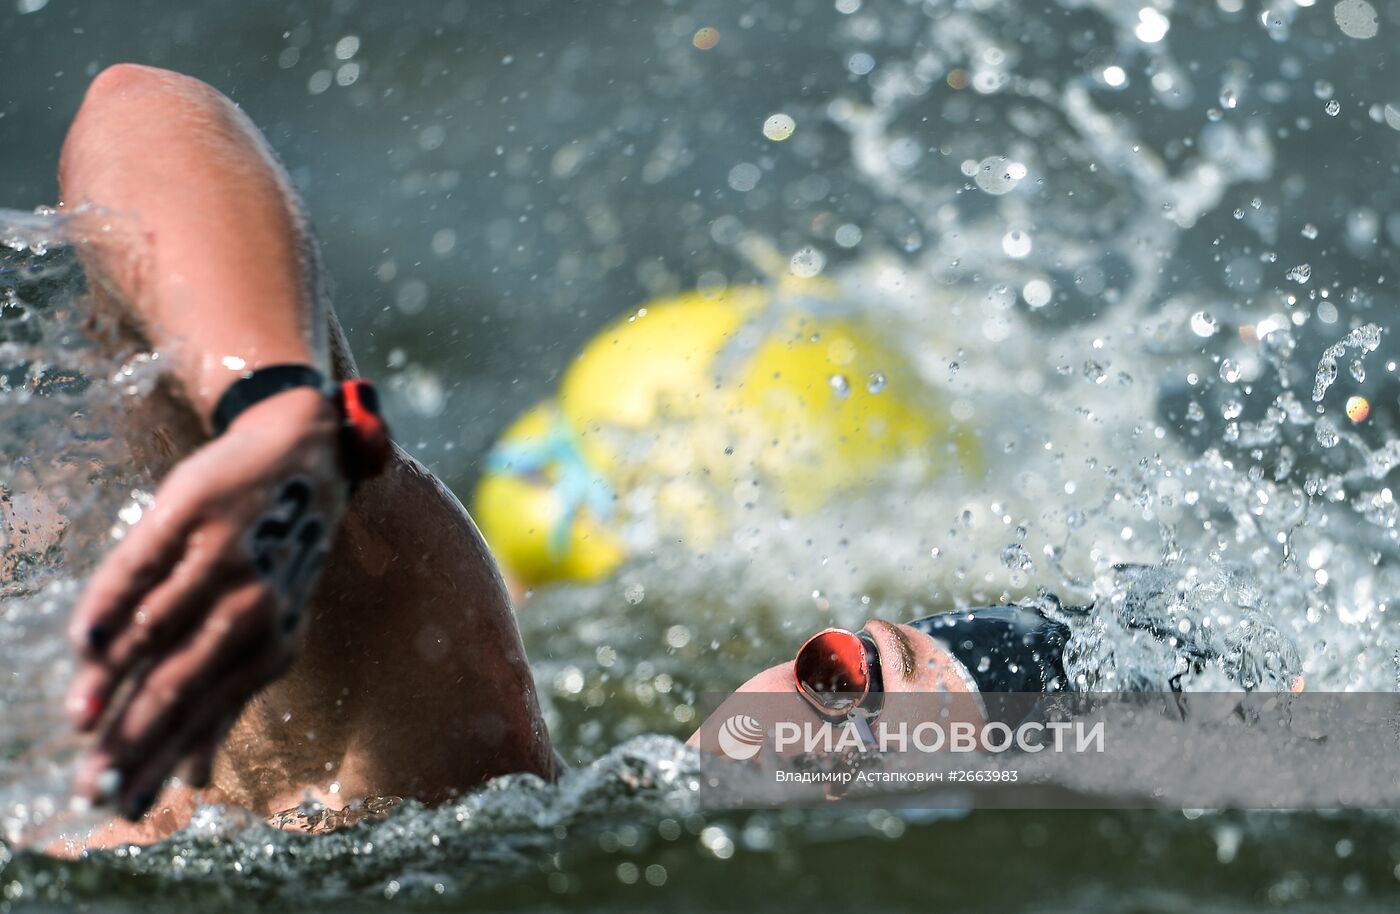 Чемпионат мира FINA 2015. Плавание на открытой воде. Женщины. 5 км